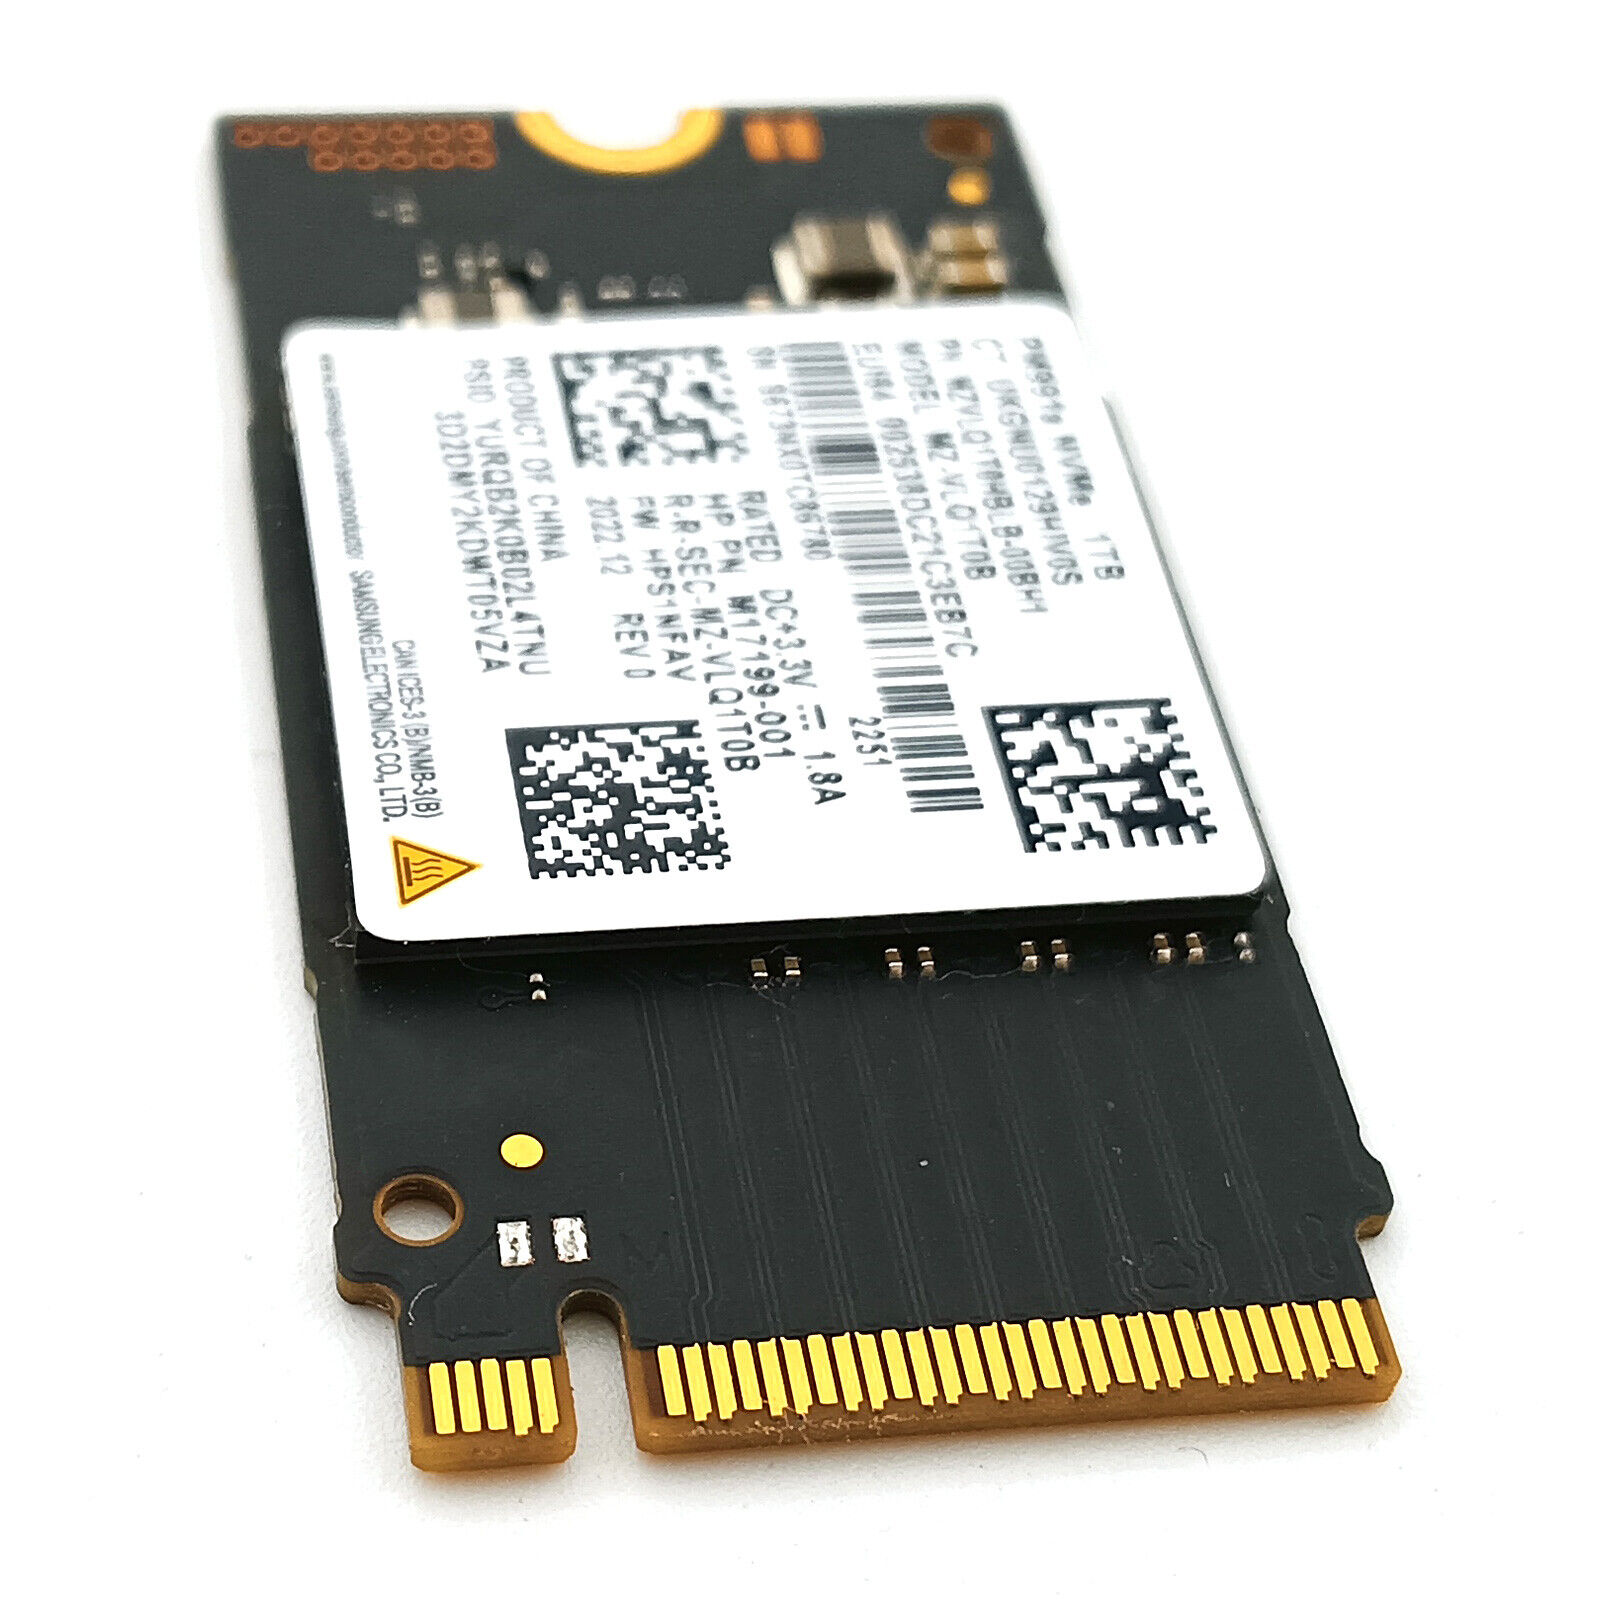 SAMSUNG SSD M2 Nvme 256GB 512GB 1TB 2T Internal Solid State Drive PM981A  PM9A1 M.2